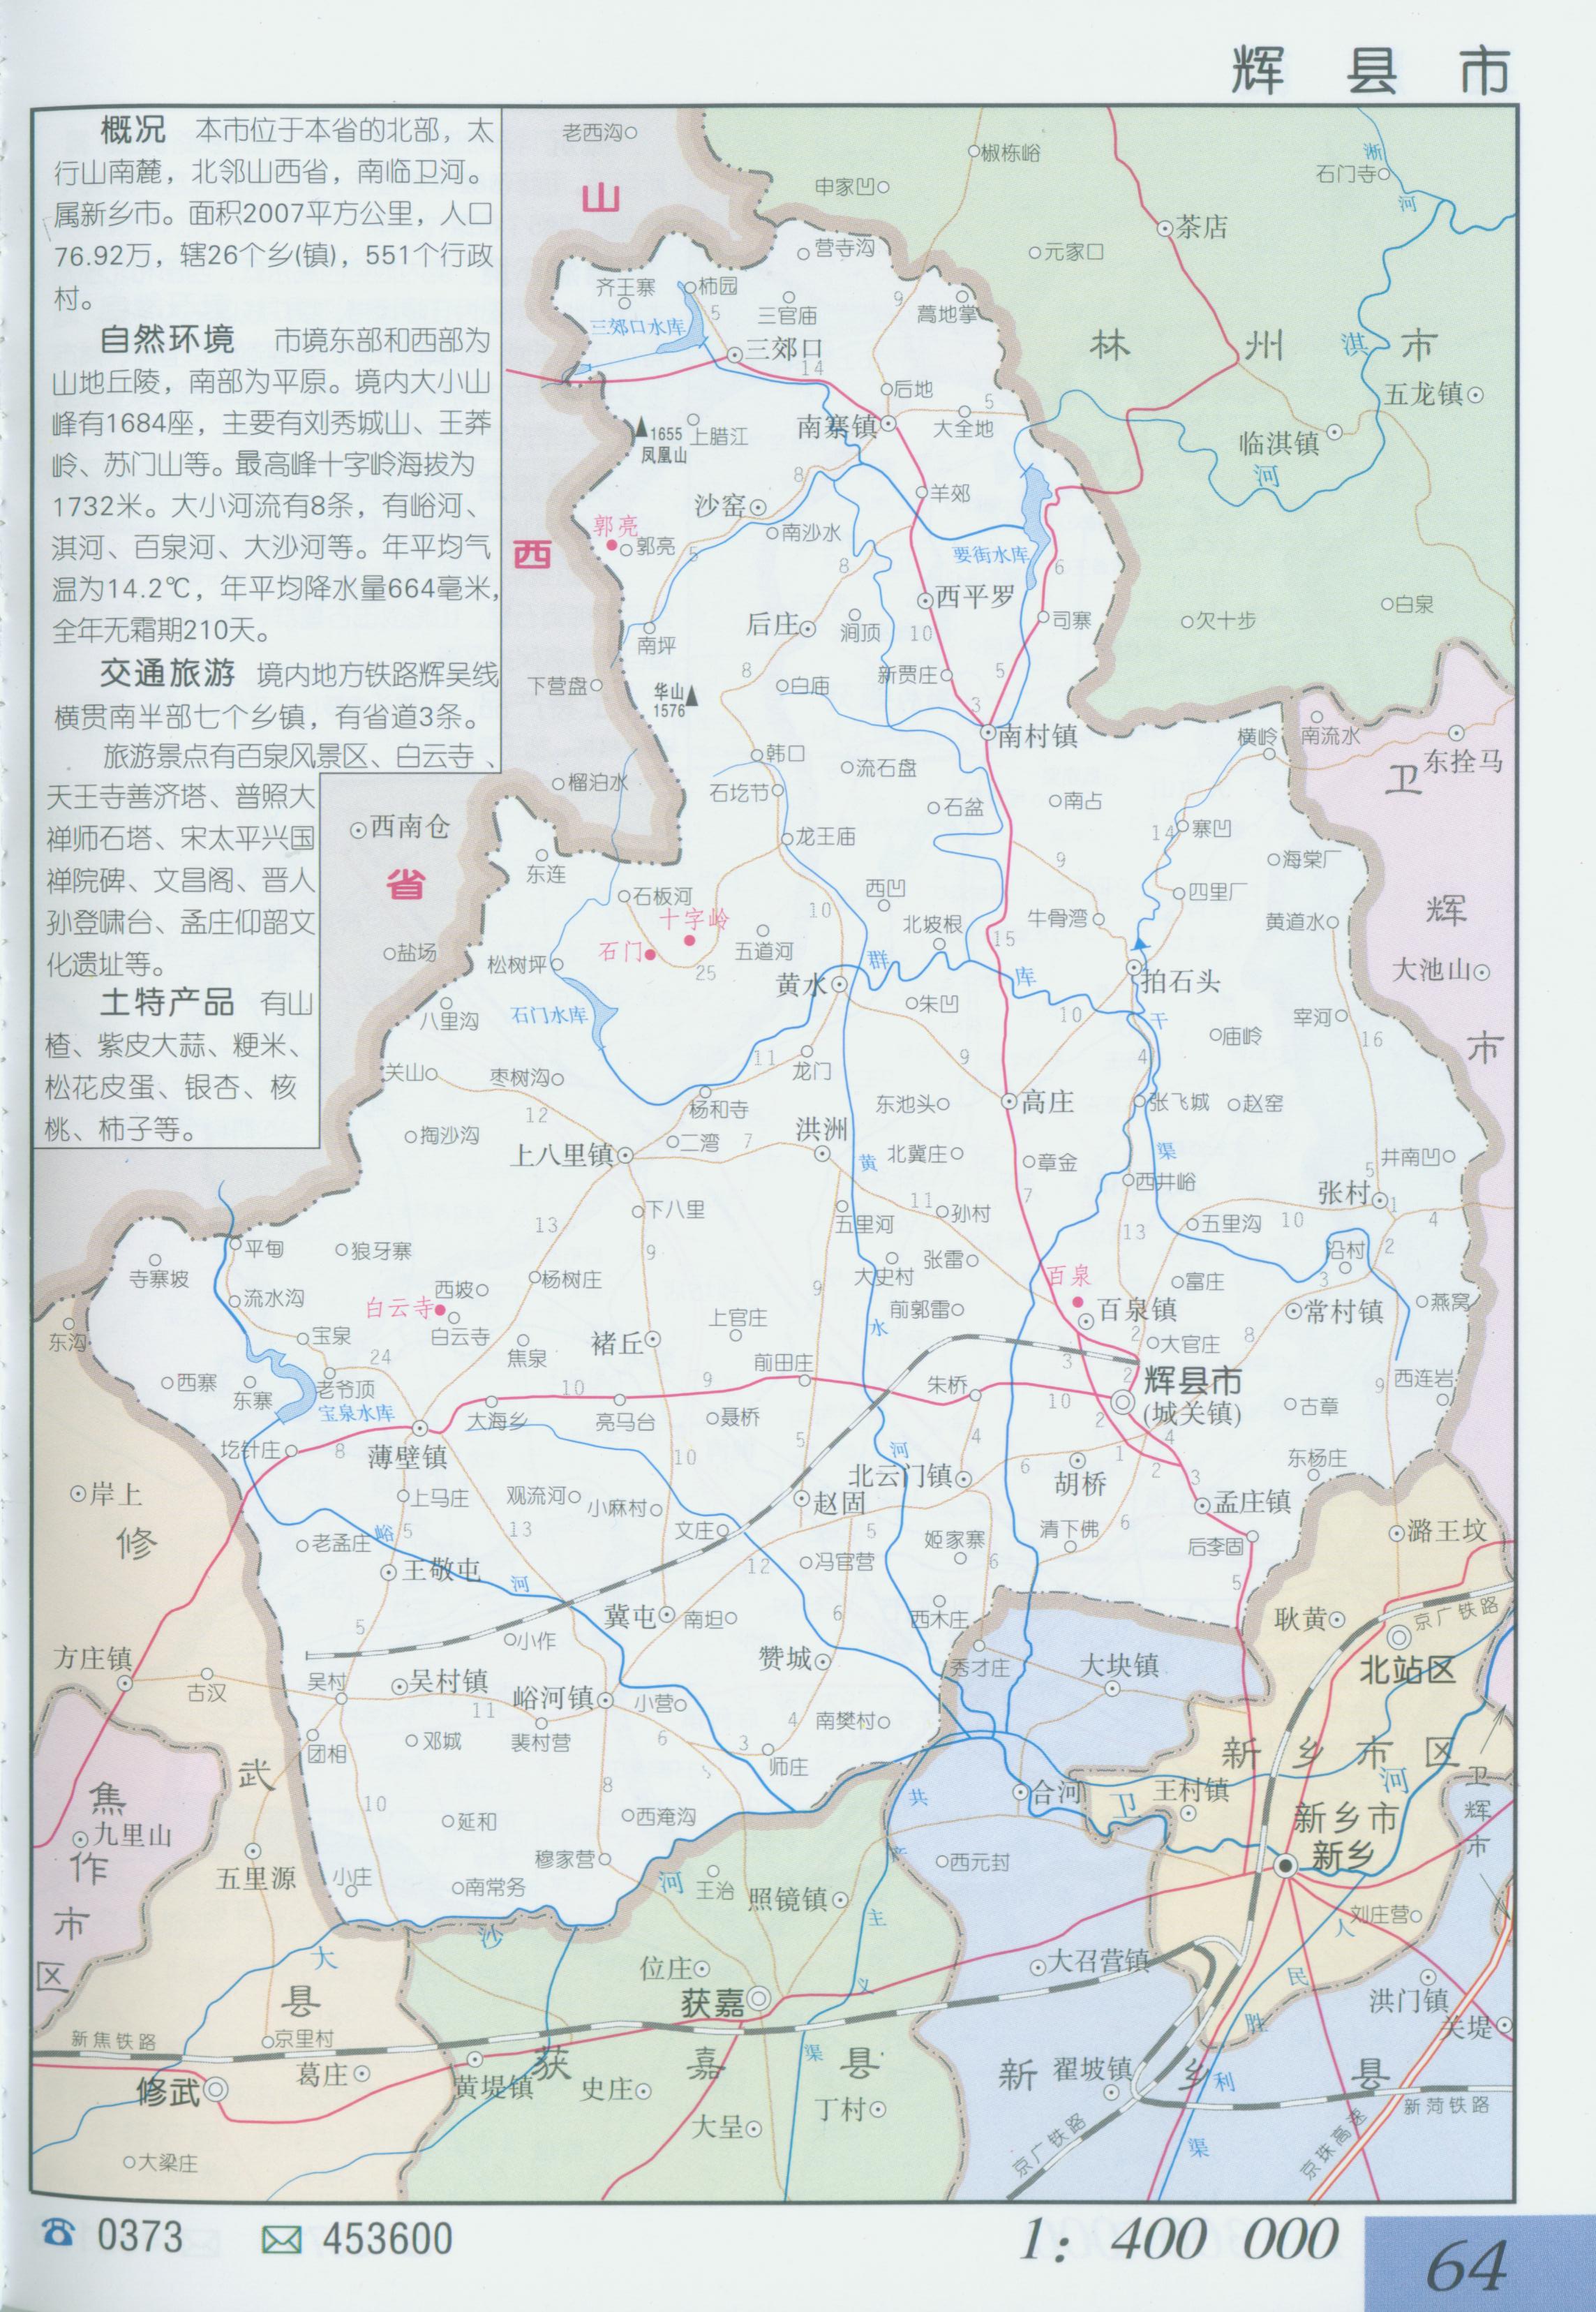 地图窝 中国 河南 新乡  (长按地图可以放大,保存,分享)图片